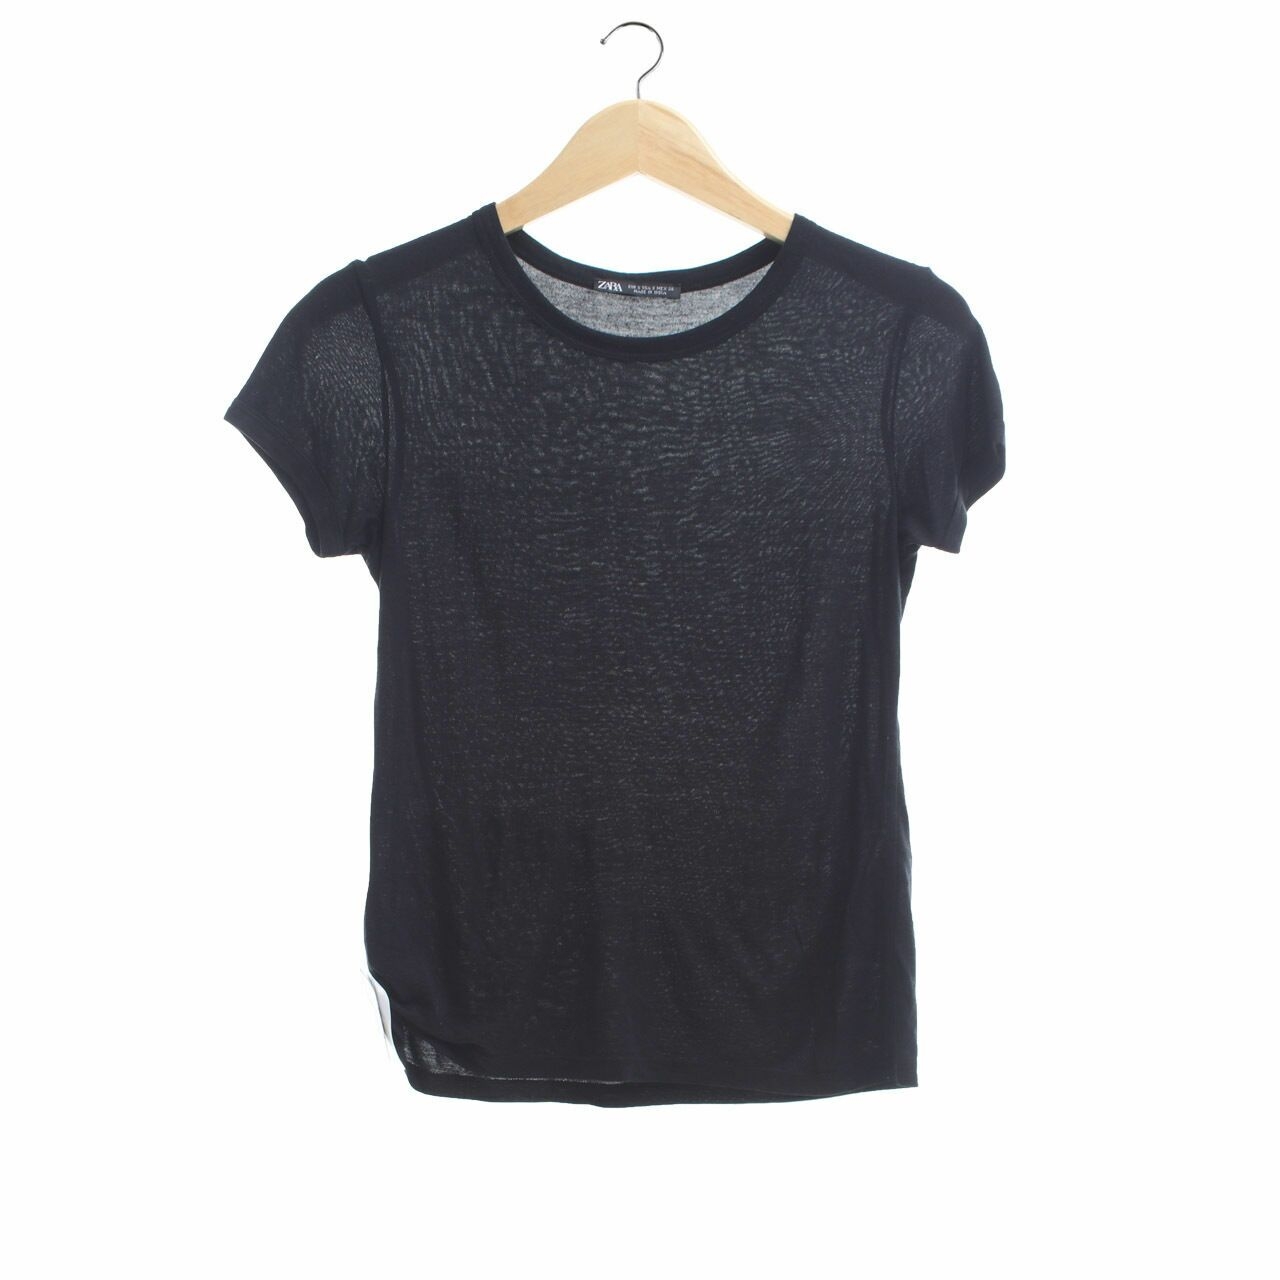 Zara Black T-Shirt